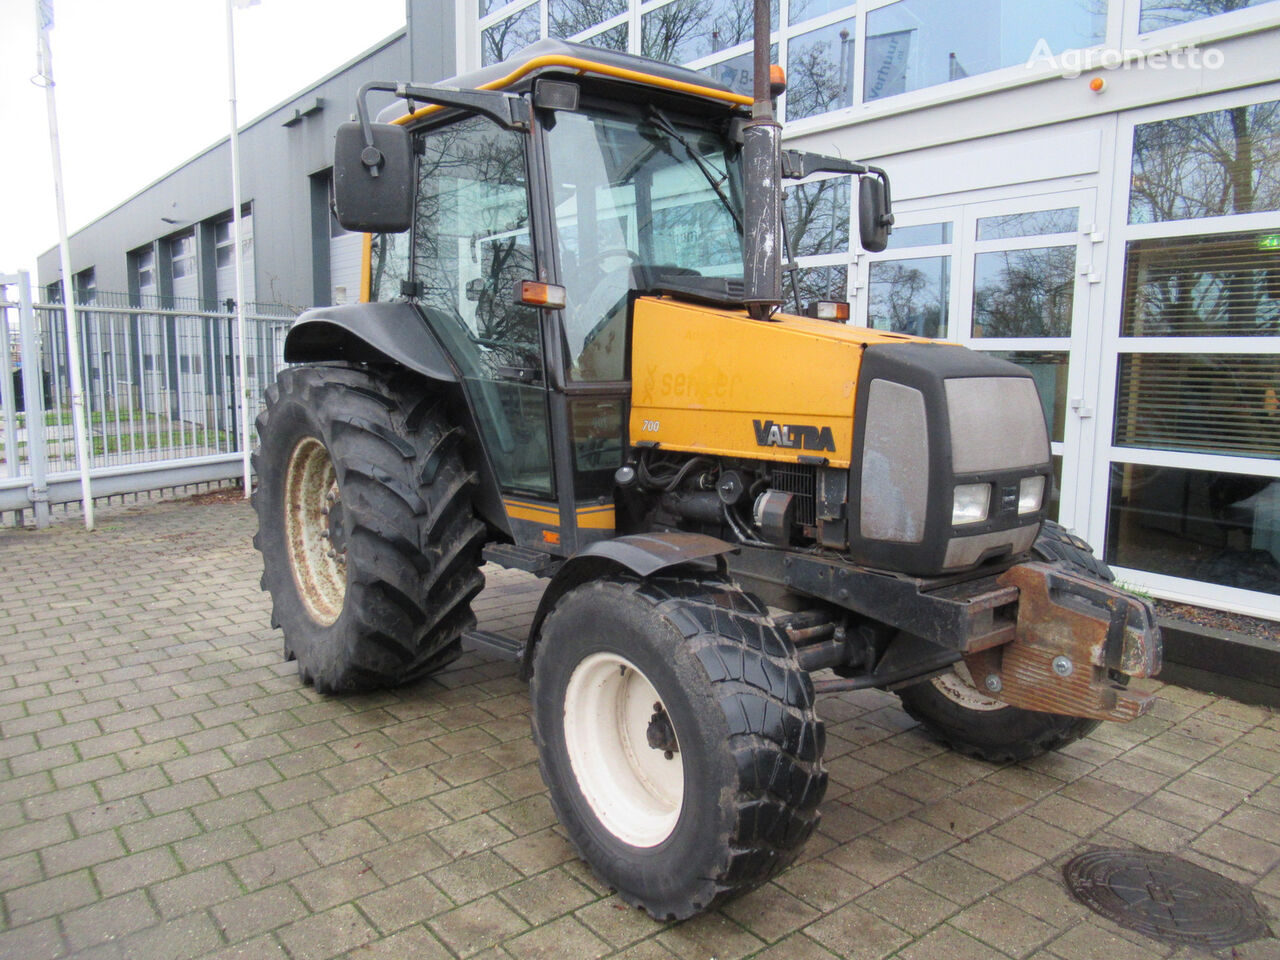 Valtra 700 4x2 wheel tractor